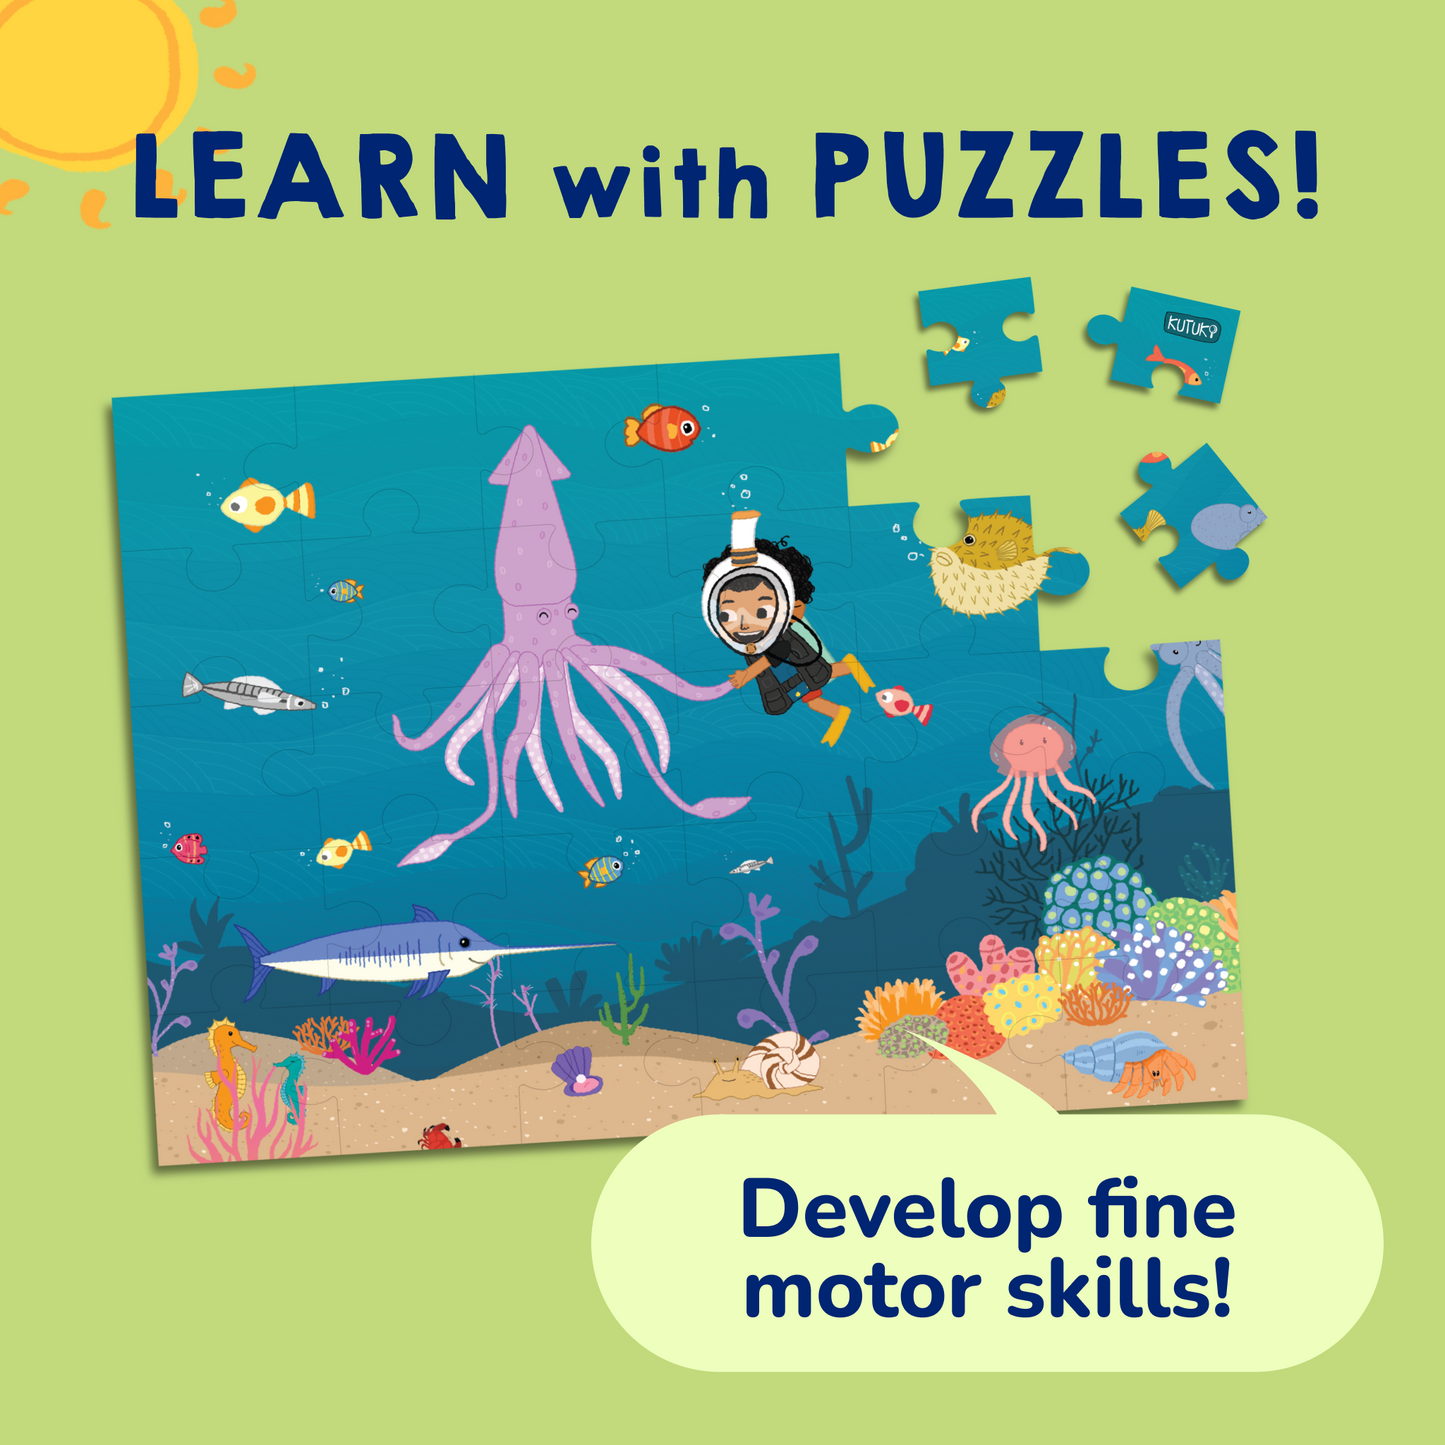 Kutu’s Underwater Adventure Puzzle